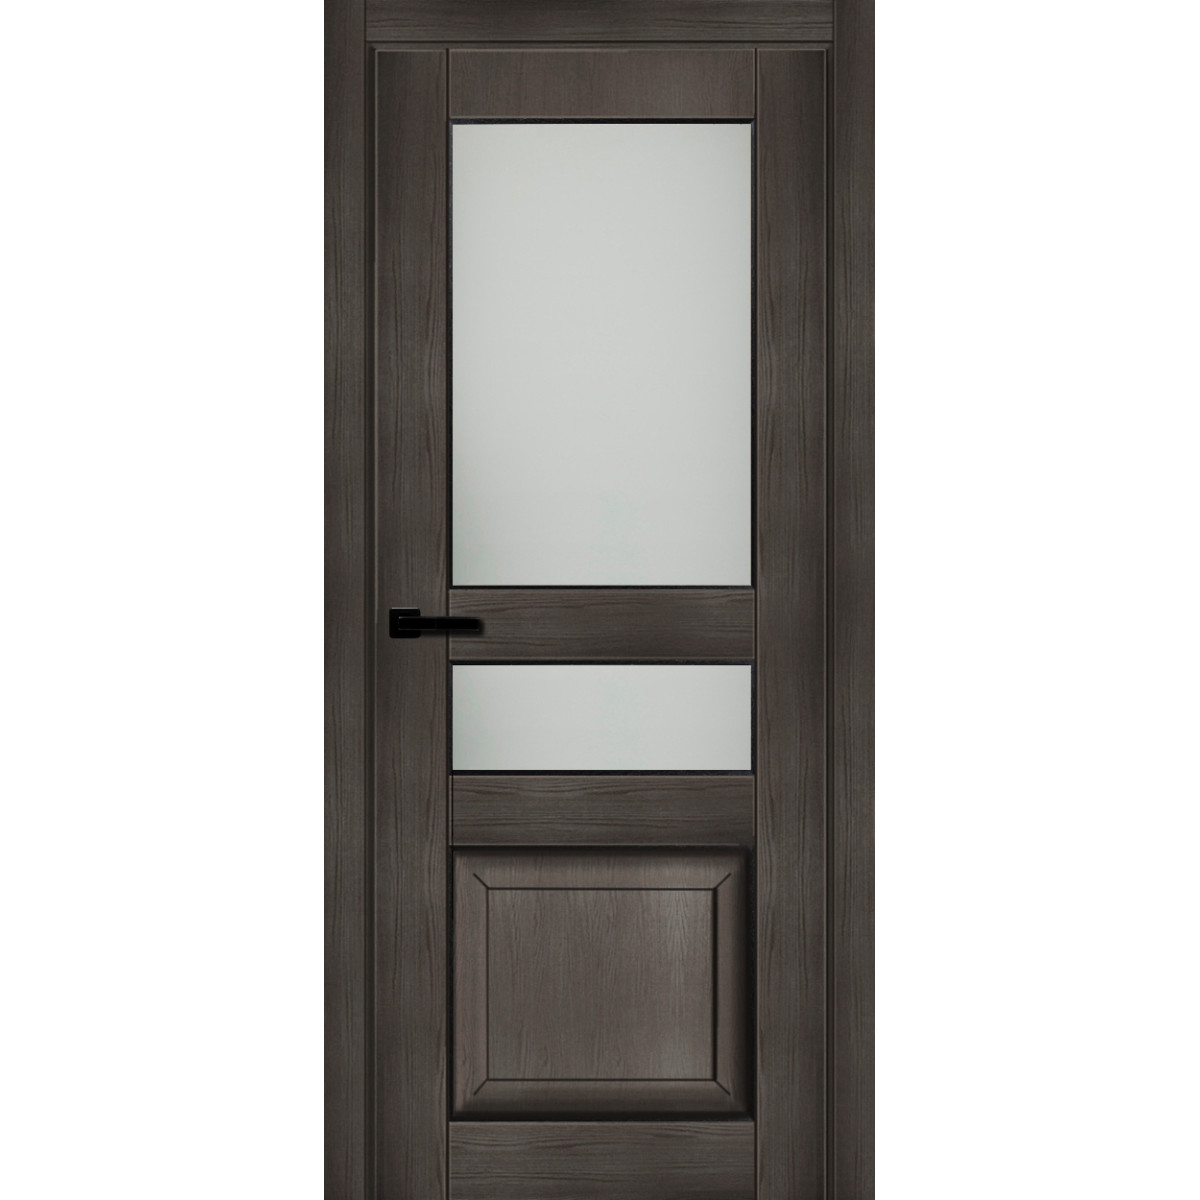 Дверь межкомнатная остеклённая с замком в комплекте Дерби 2000x700 мм CPL цвет дуб чёрный матовый